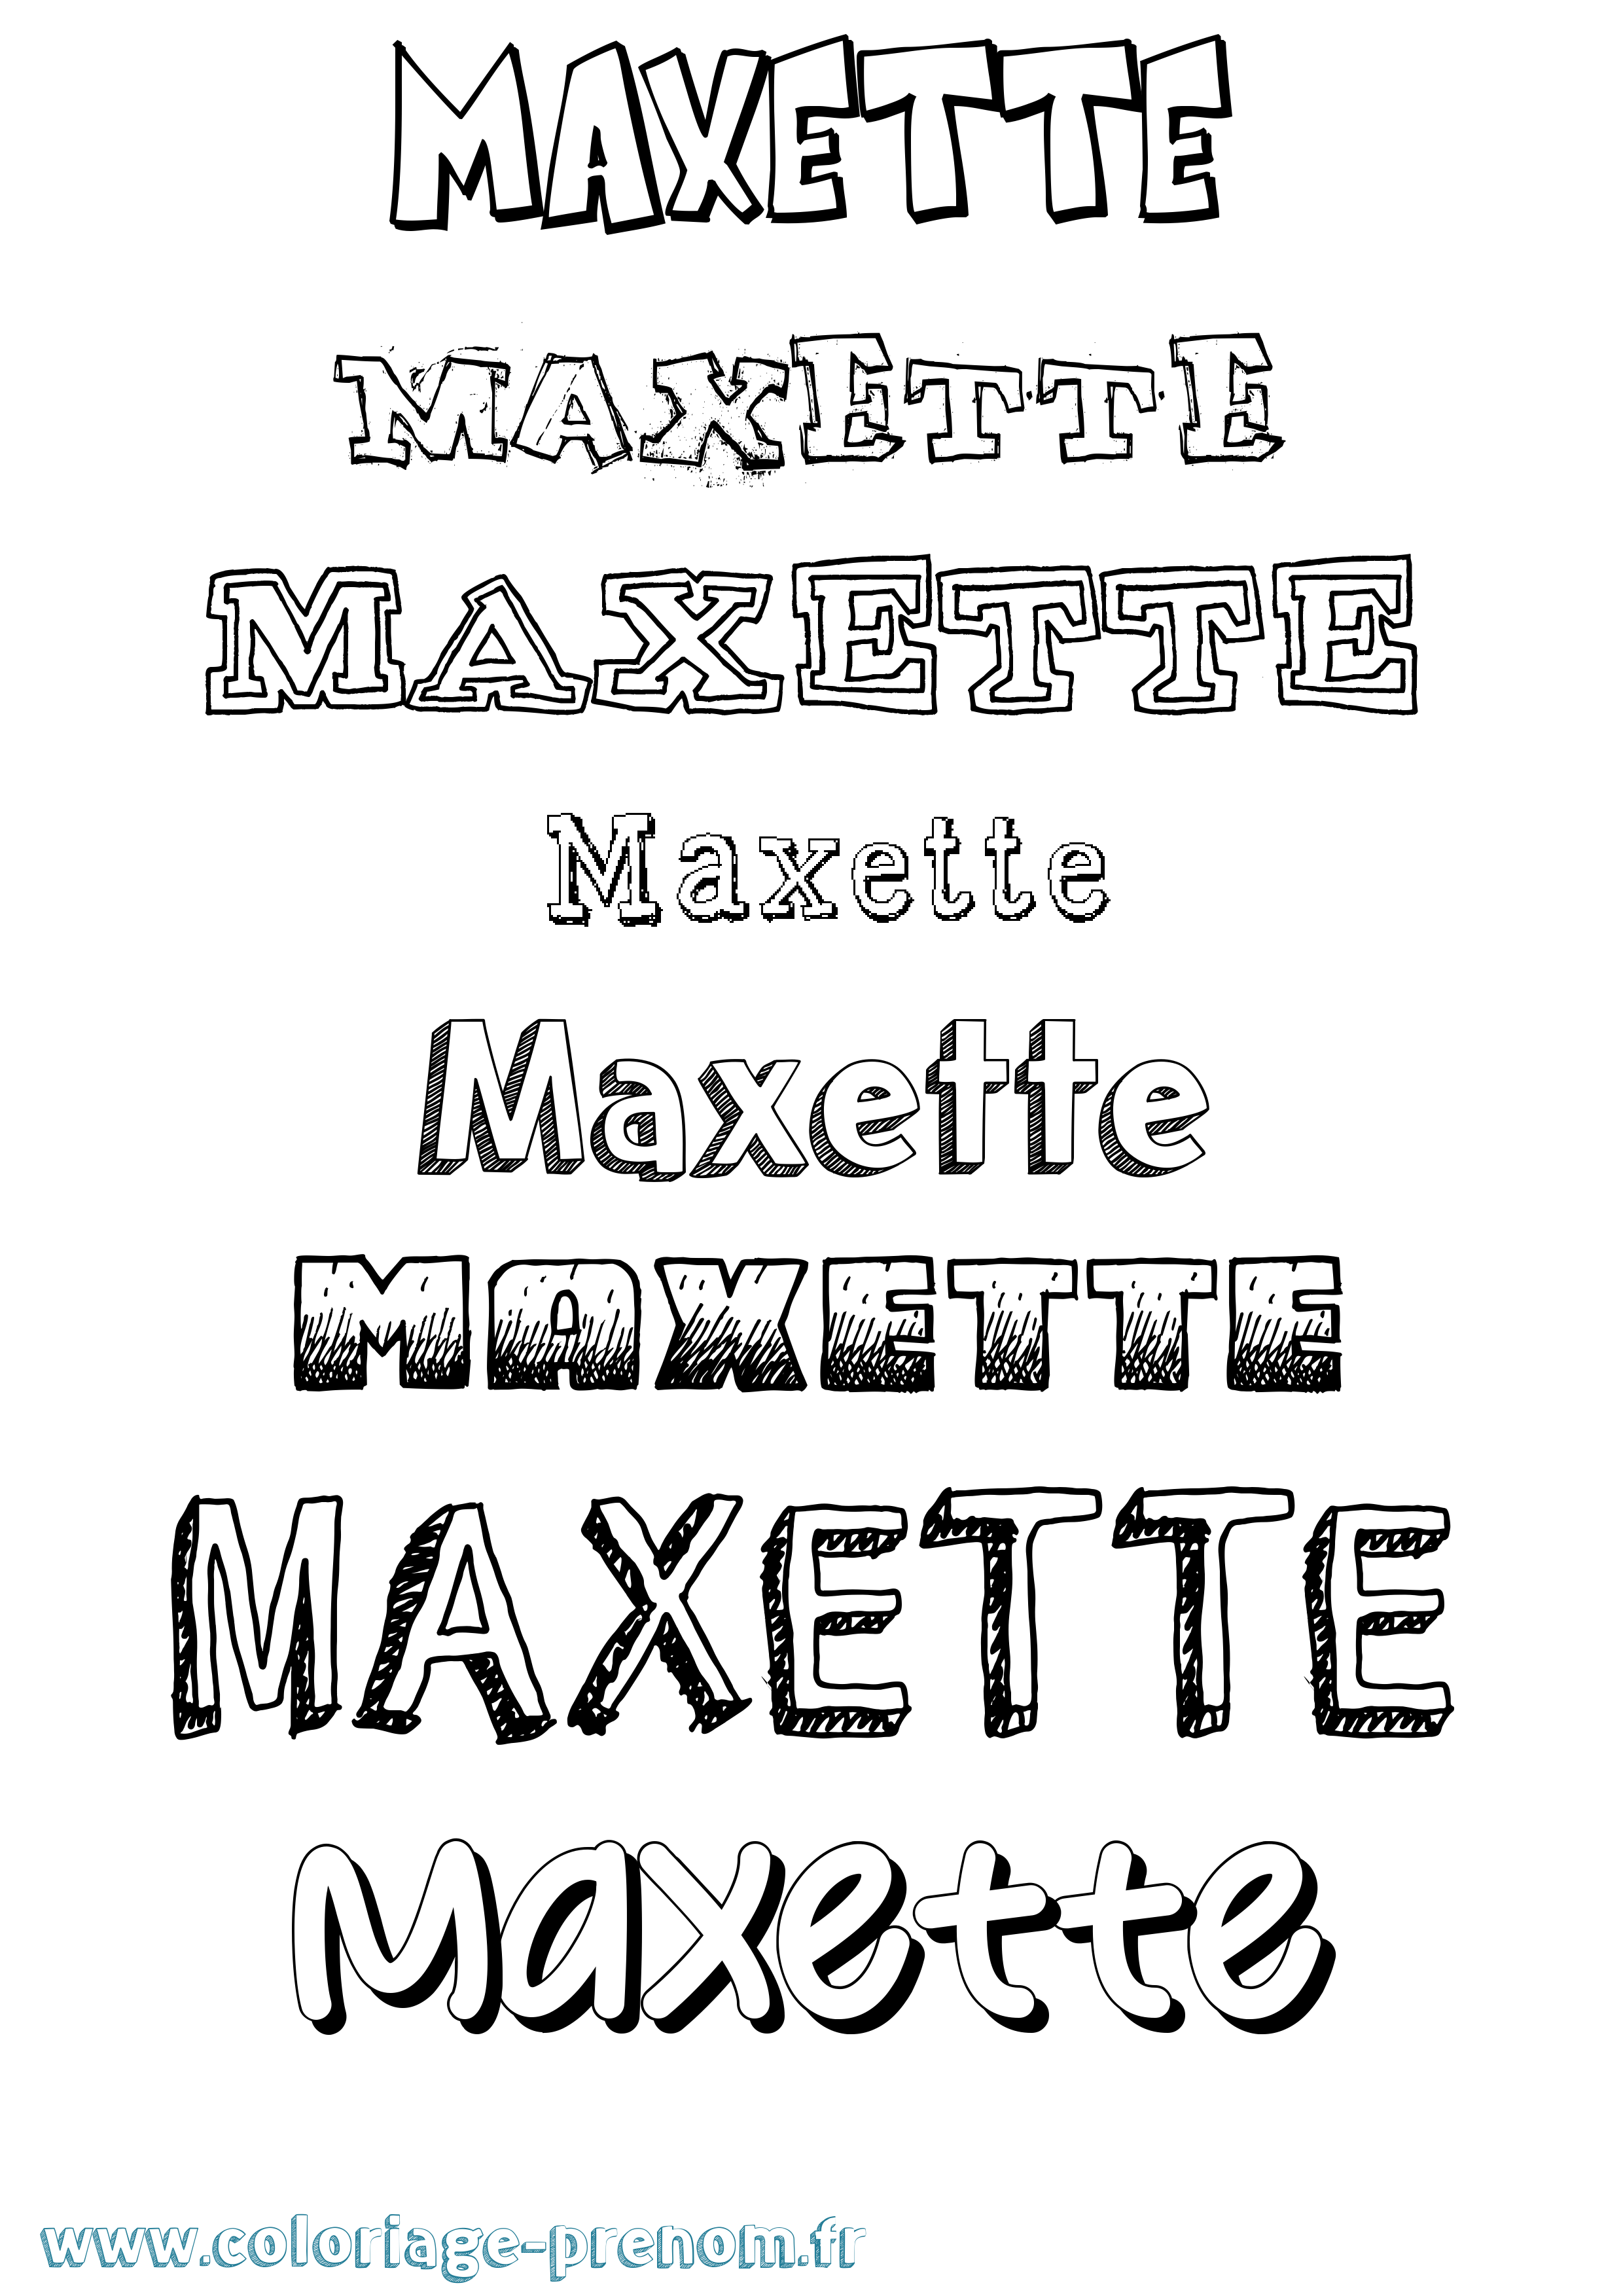 Coloriage prénom Maxette Dessiné